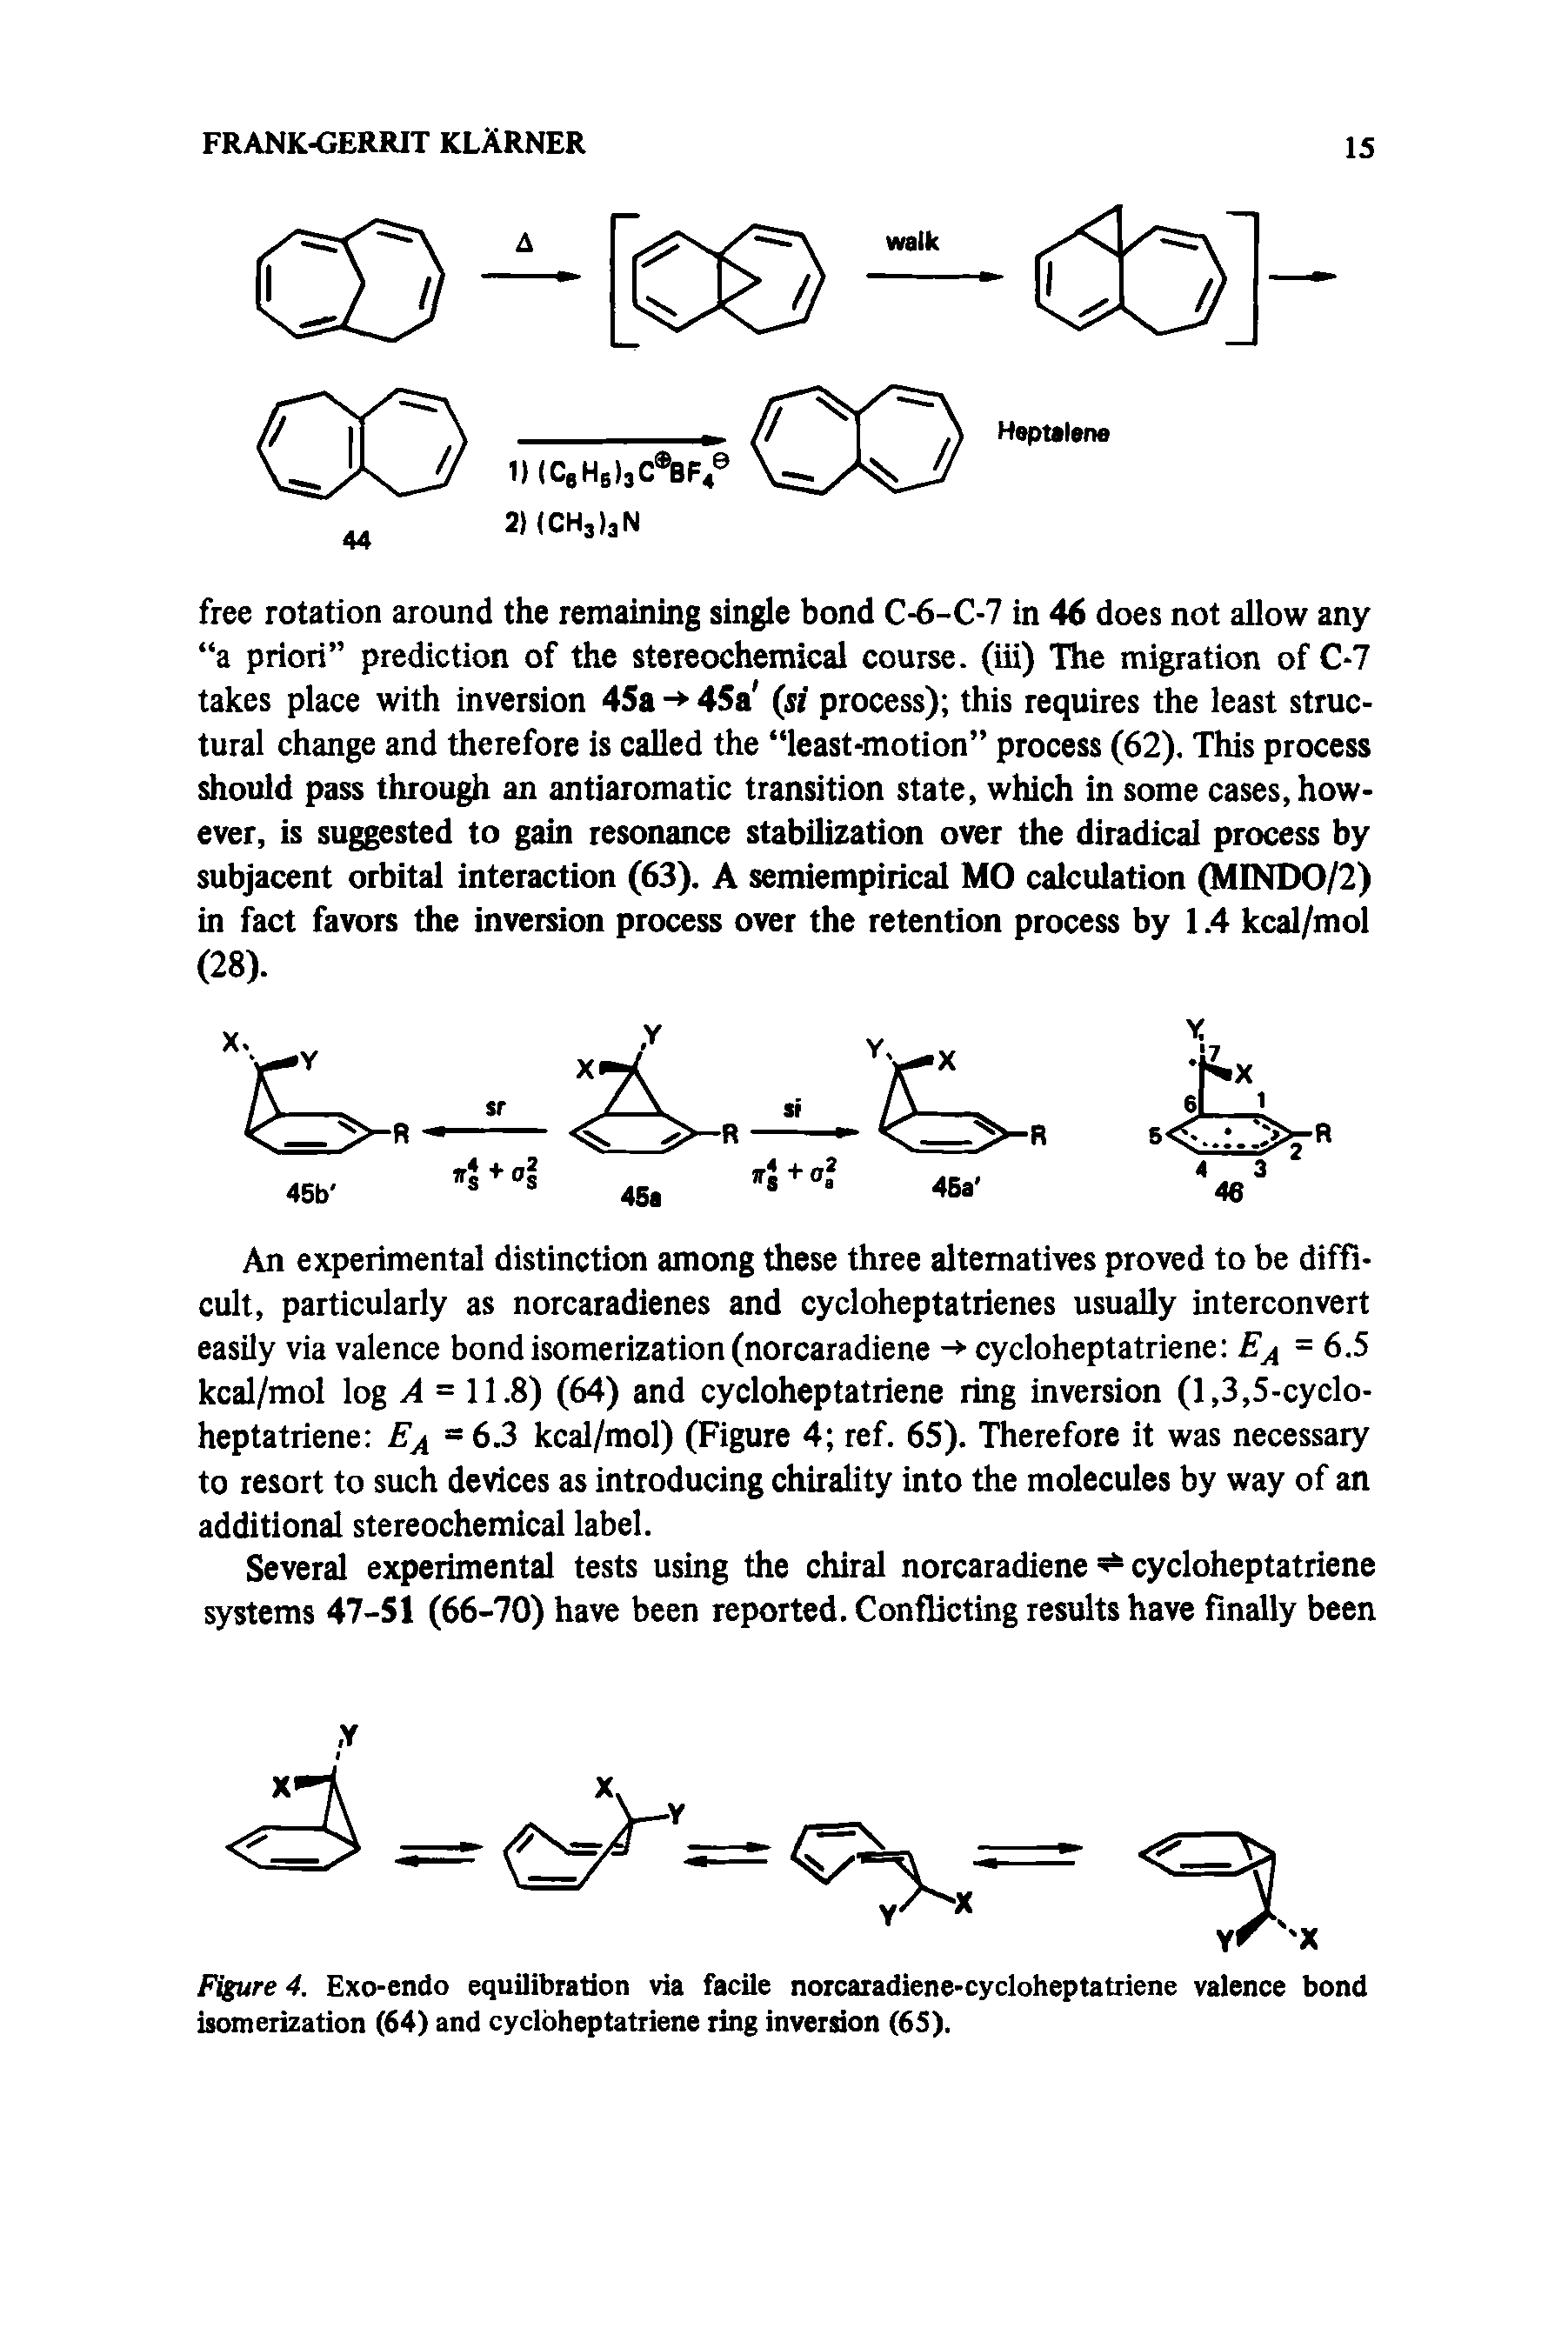 Figure 4. Exo-endo equilibration via facile norcaradiene-cycloheptatriene valence bond isomerization (64) and cycloheptatriene ring inversion (65).